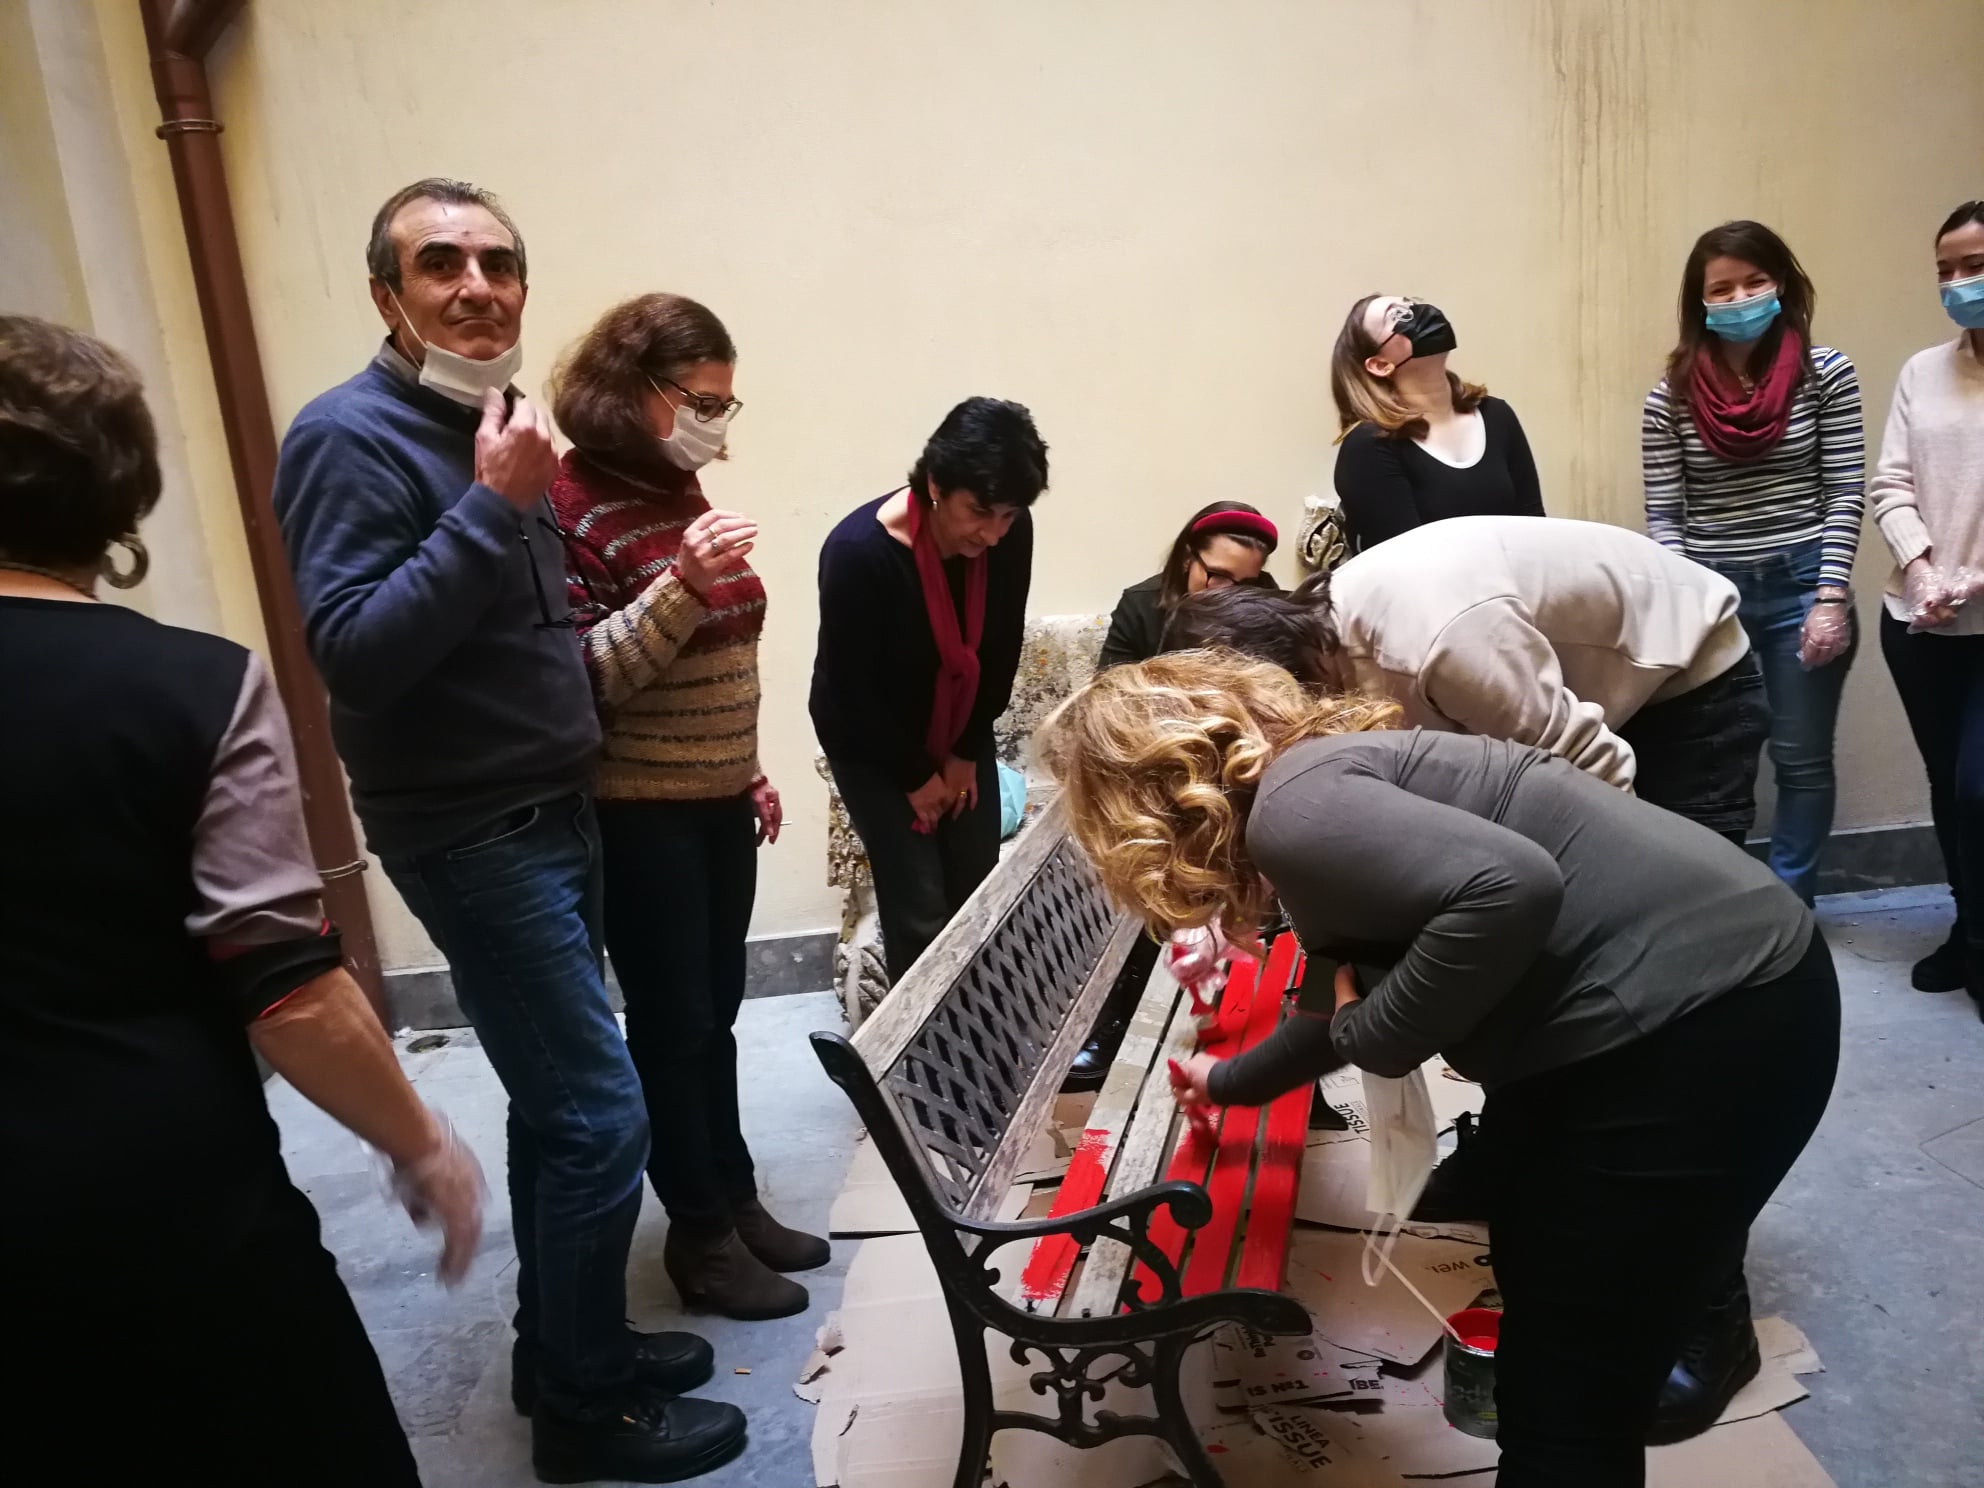 Giornata internazionale contro la violenza sulle donne, Palermo si colora di rosso: numerose iniziative ed eventi